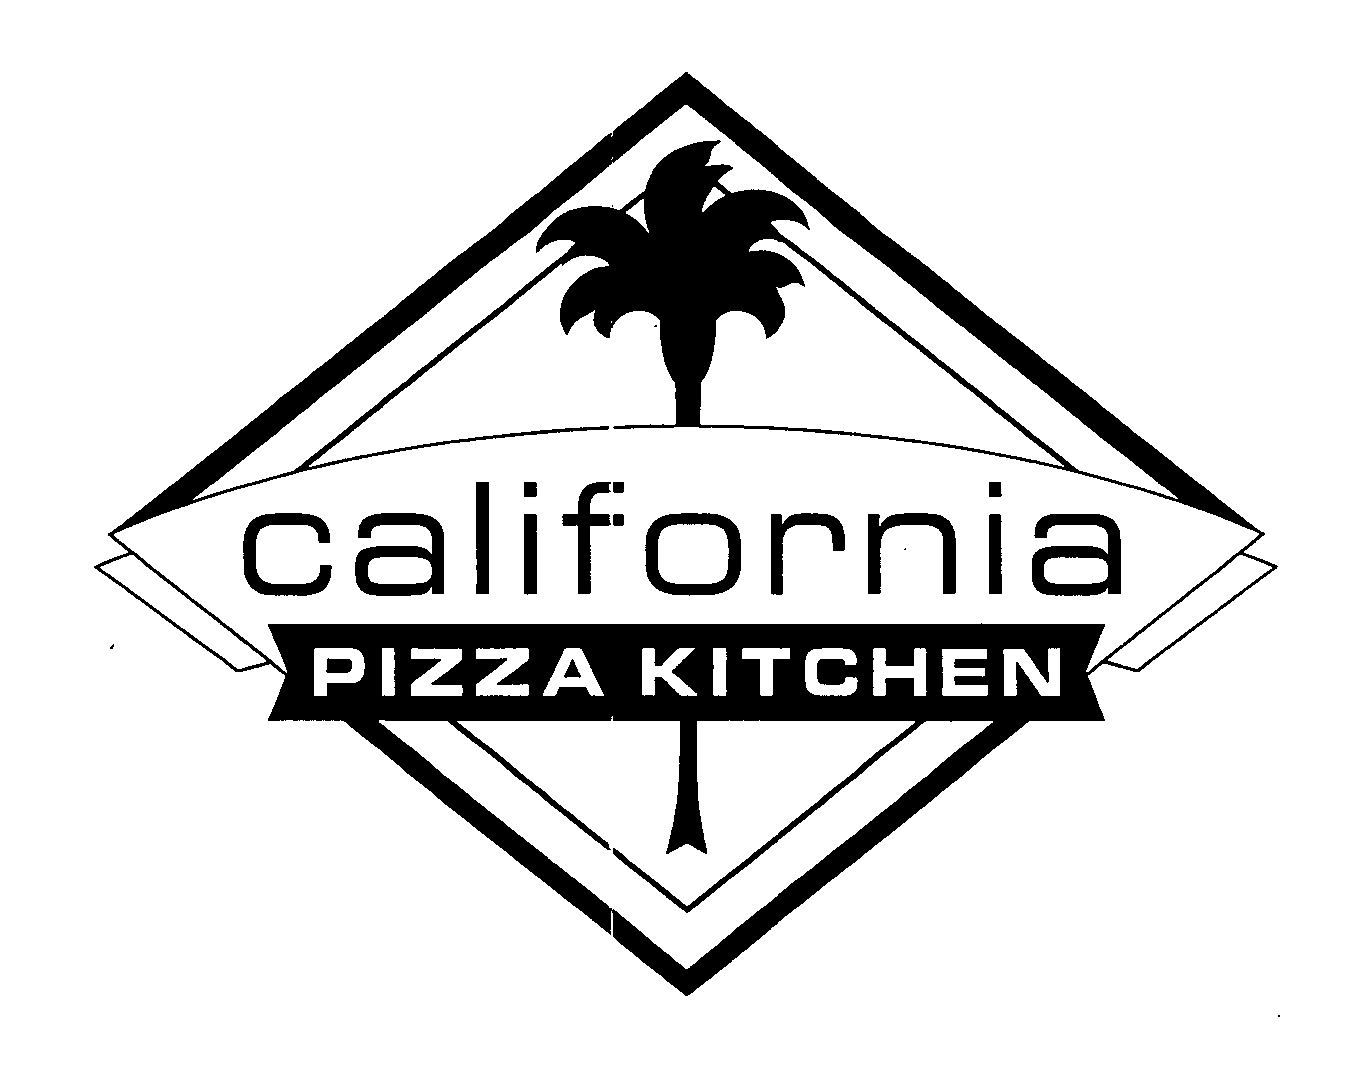  CALIFORNIA PIZZA KITCHEN